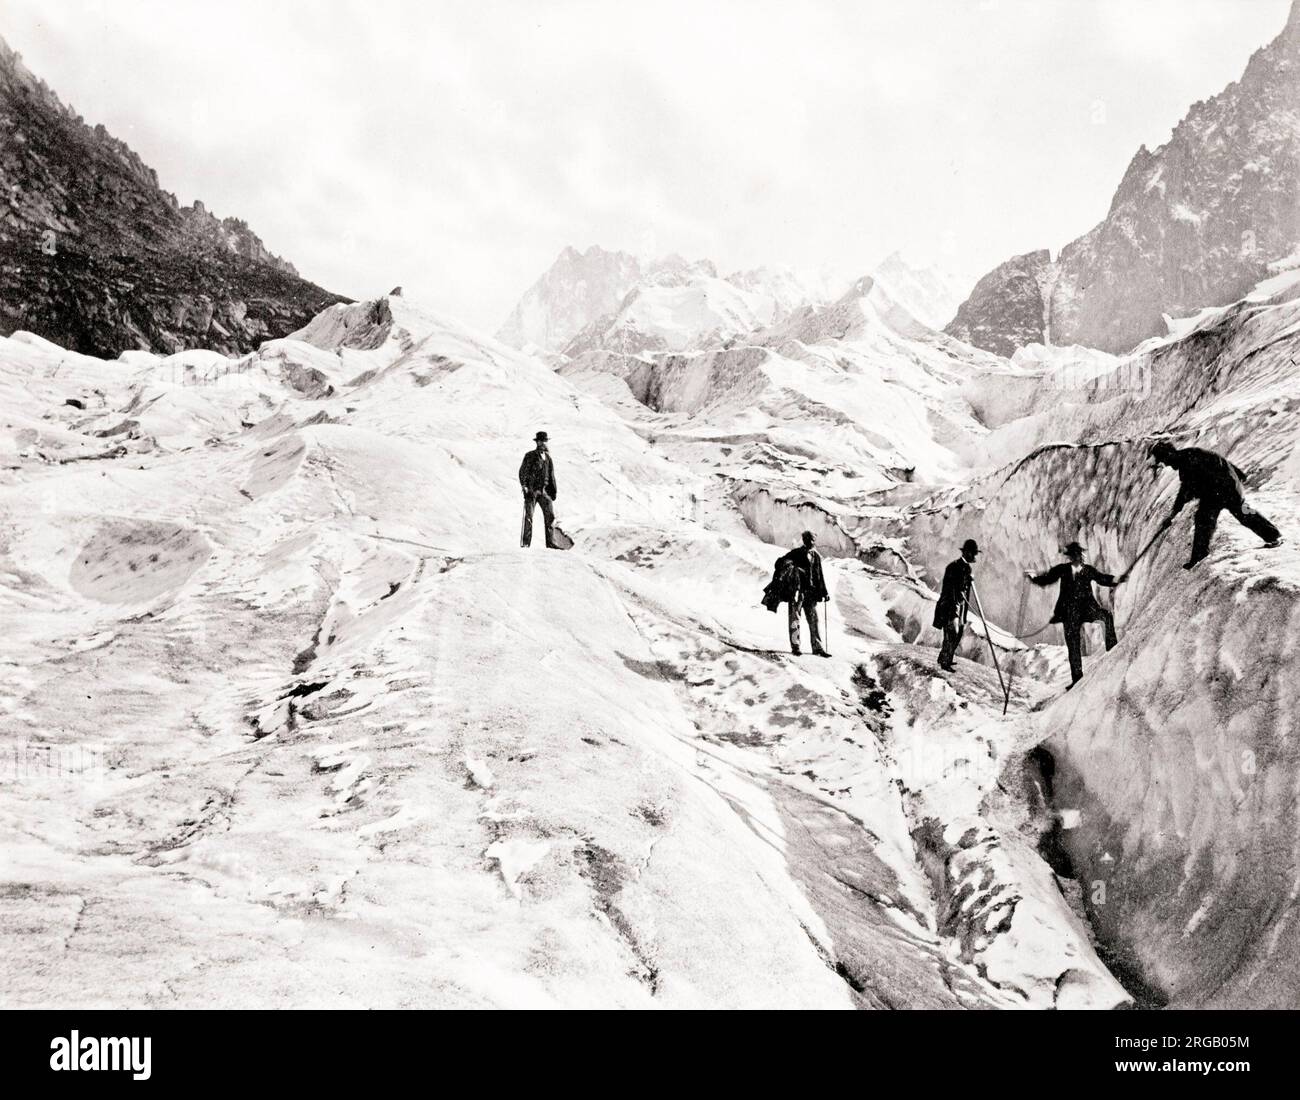 Fotografia d'epoca del XIX secolo: Il ghiacciaio Geant è un grande ghiacciaio sul versante francese del massiccio del Monte bianco nelle Alpi. È il principale fornitore di ghiaccio al Mer de Glace che scorre verso Montenvers. Prende il nome dalla vicina Dent du Geant. Immagine c.1880. Foto Stock